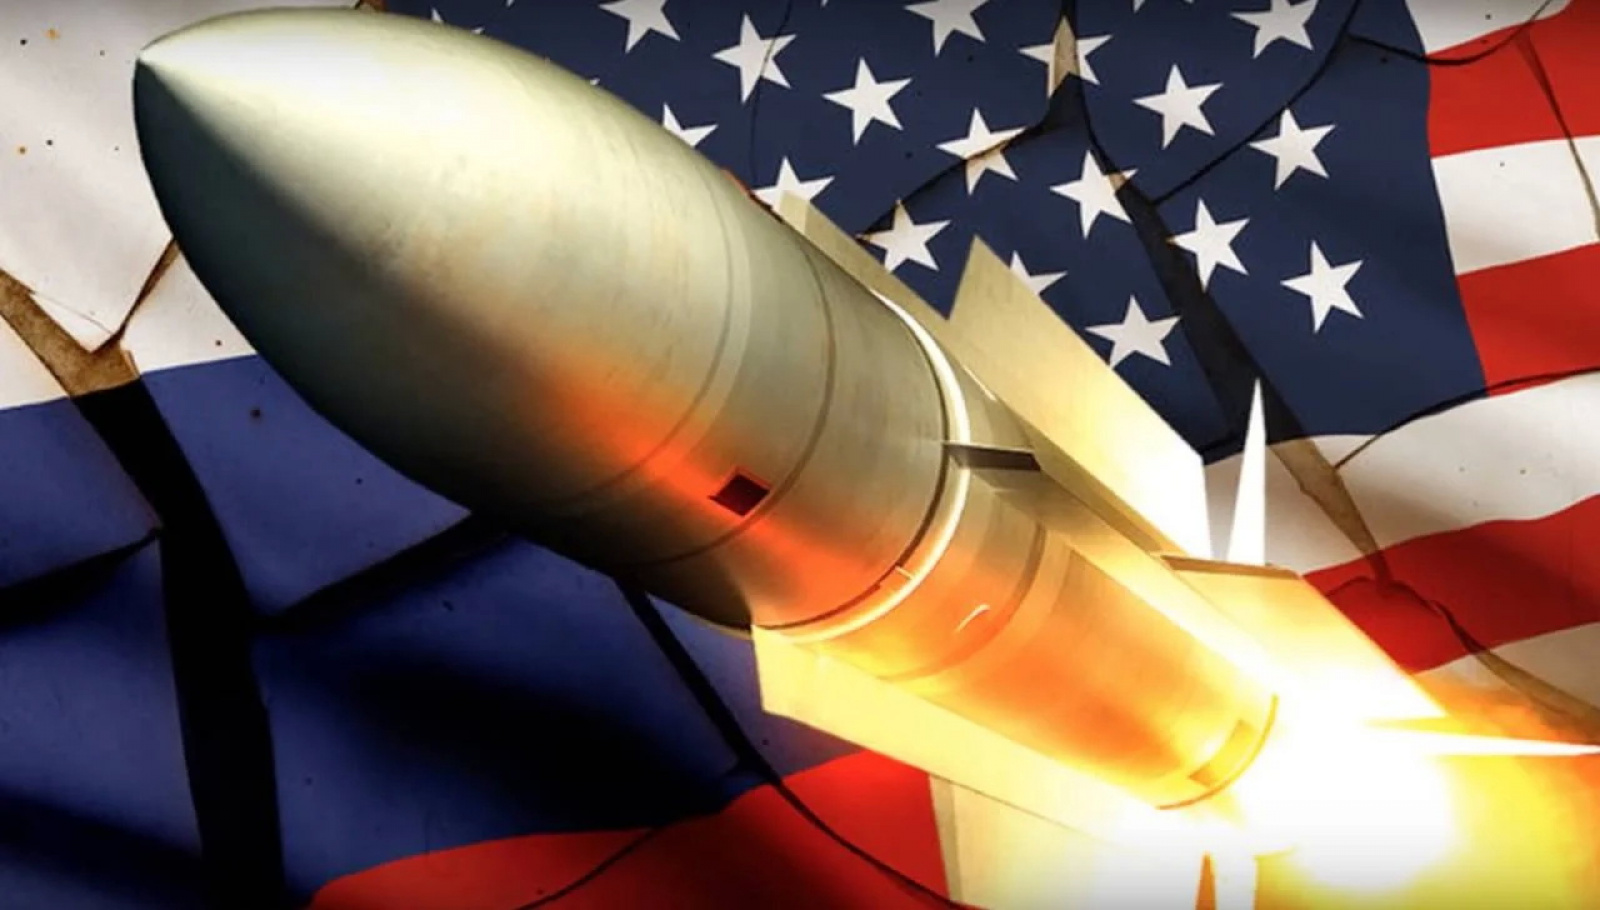 Souboj analytiků: Který stát nese vinu za krach americko-ruské kontroly zbrojení? SCOTT RITTER Vs. Jeffrey Fischer